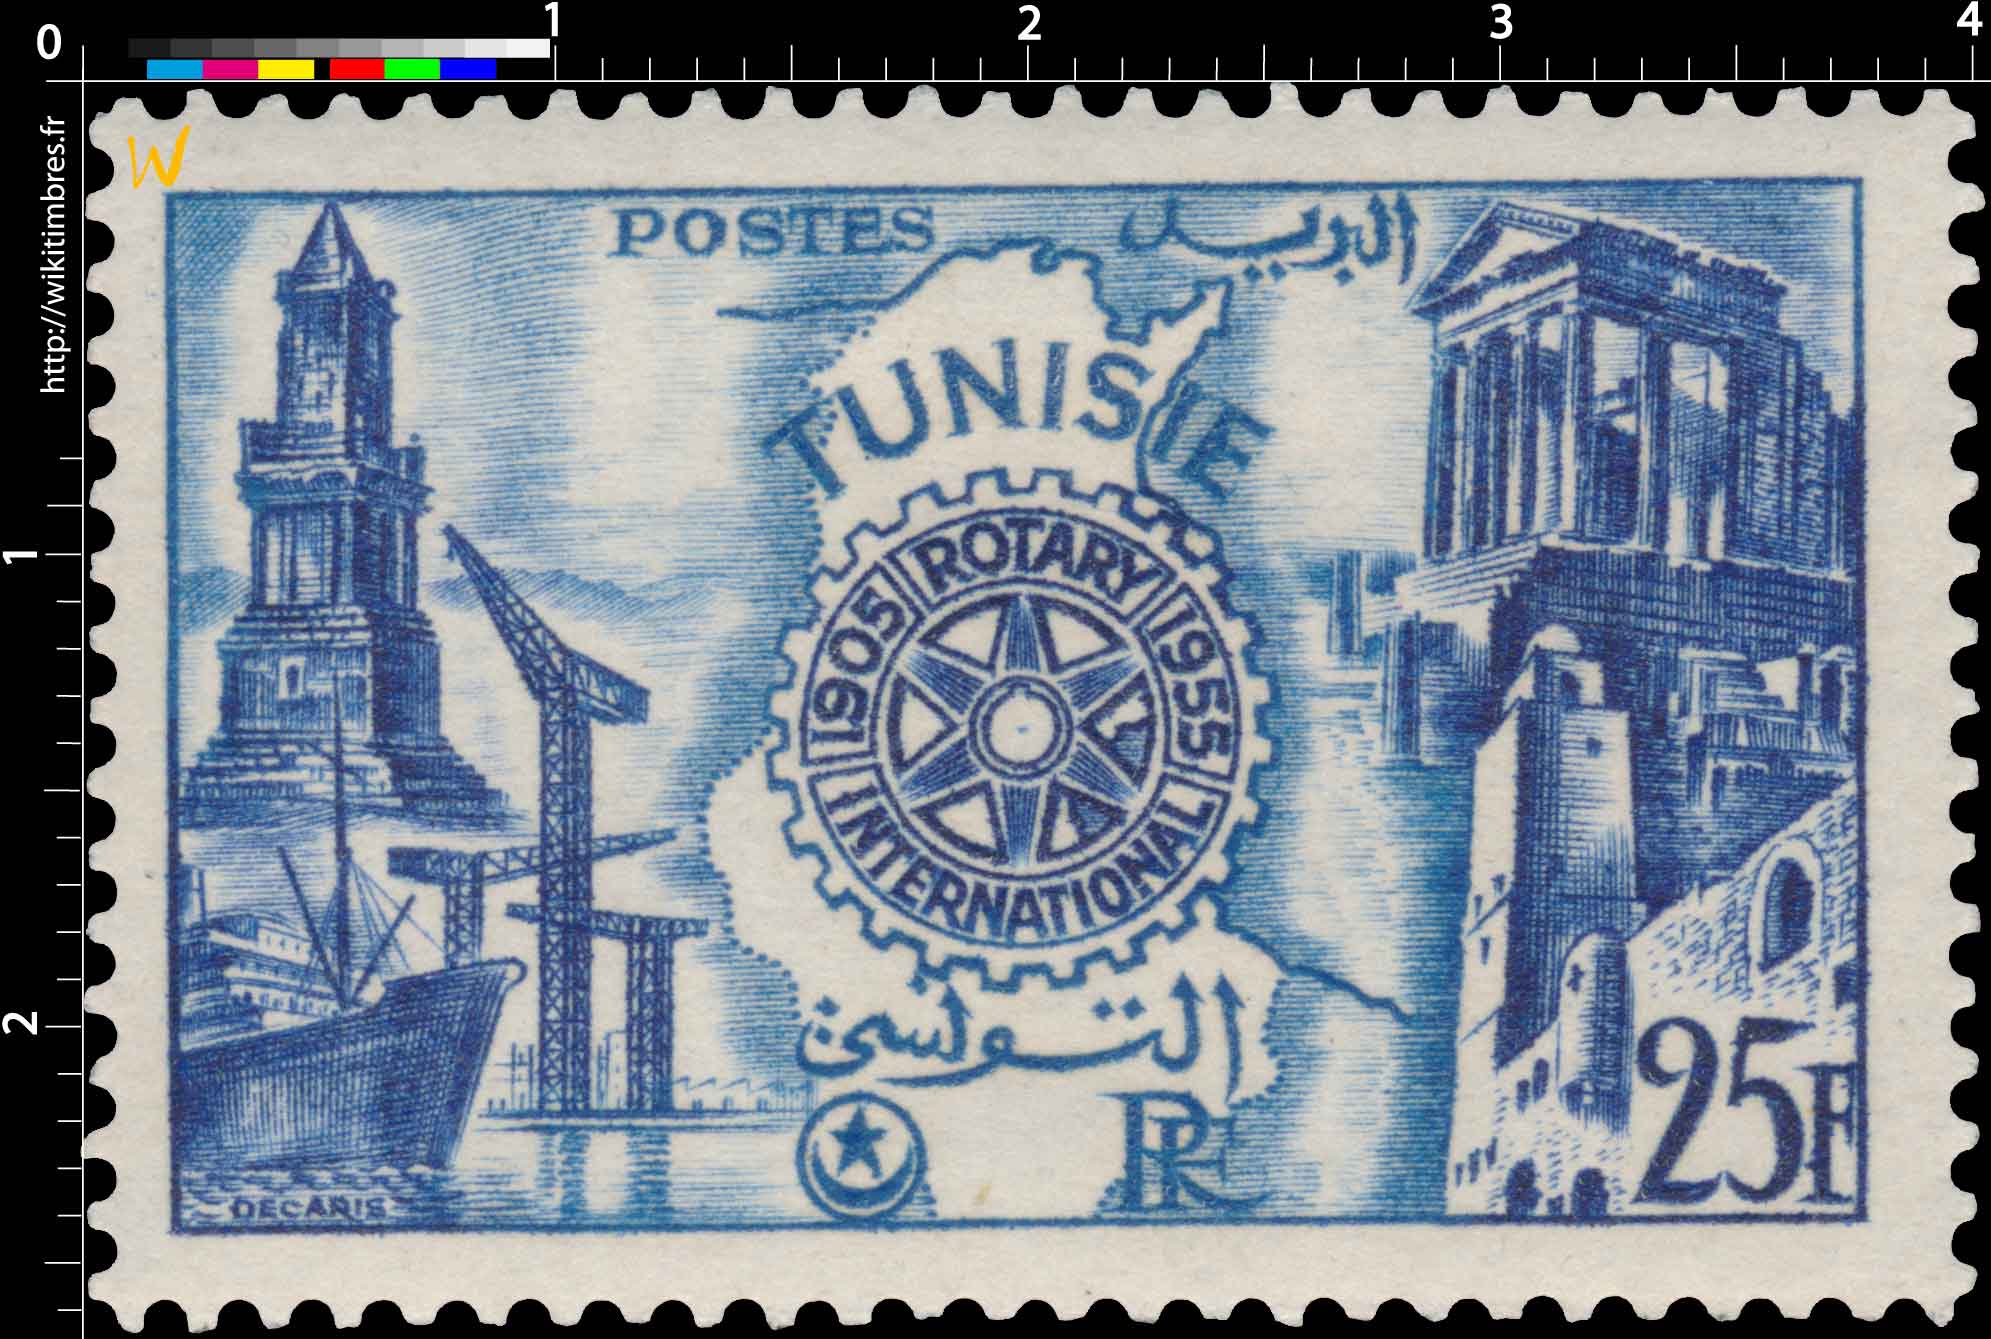 Tunisie - Cinquantenaire du Rotary International